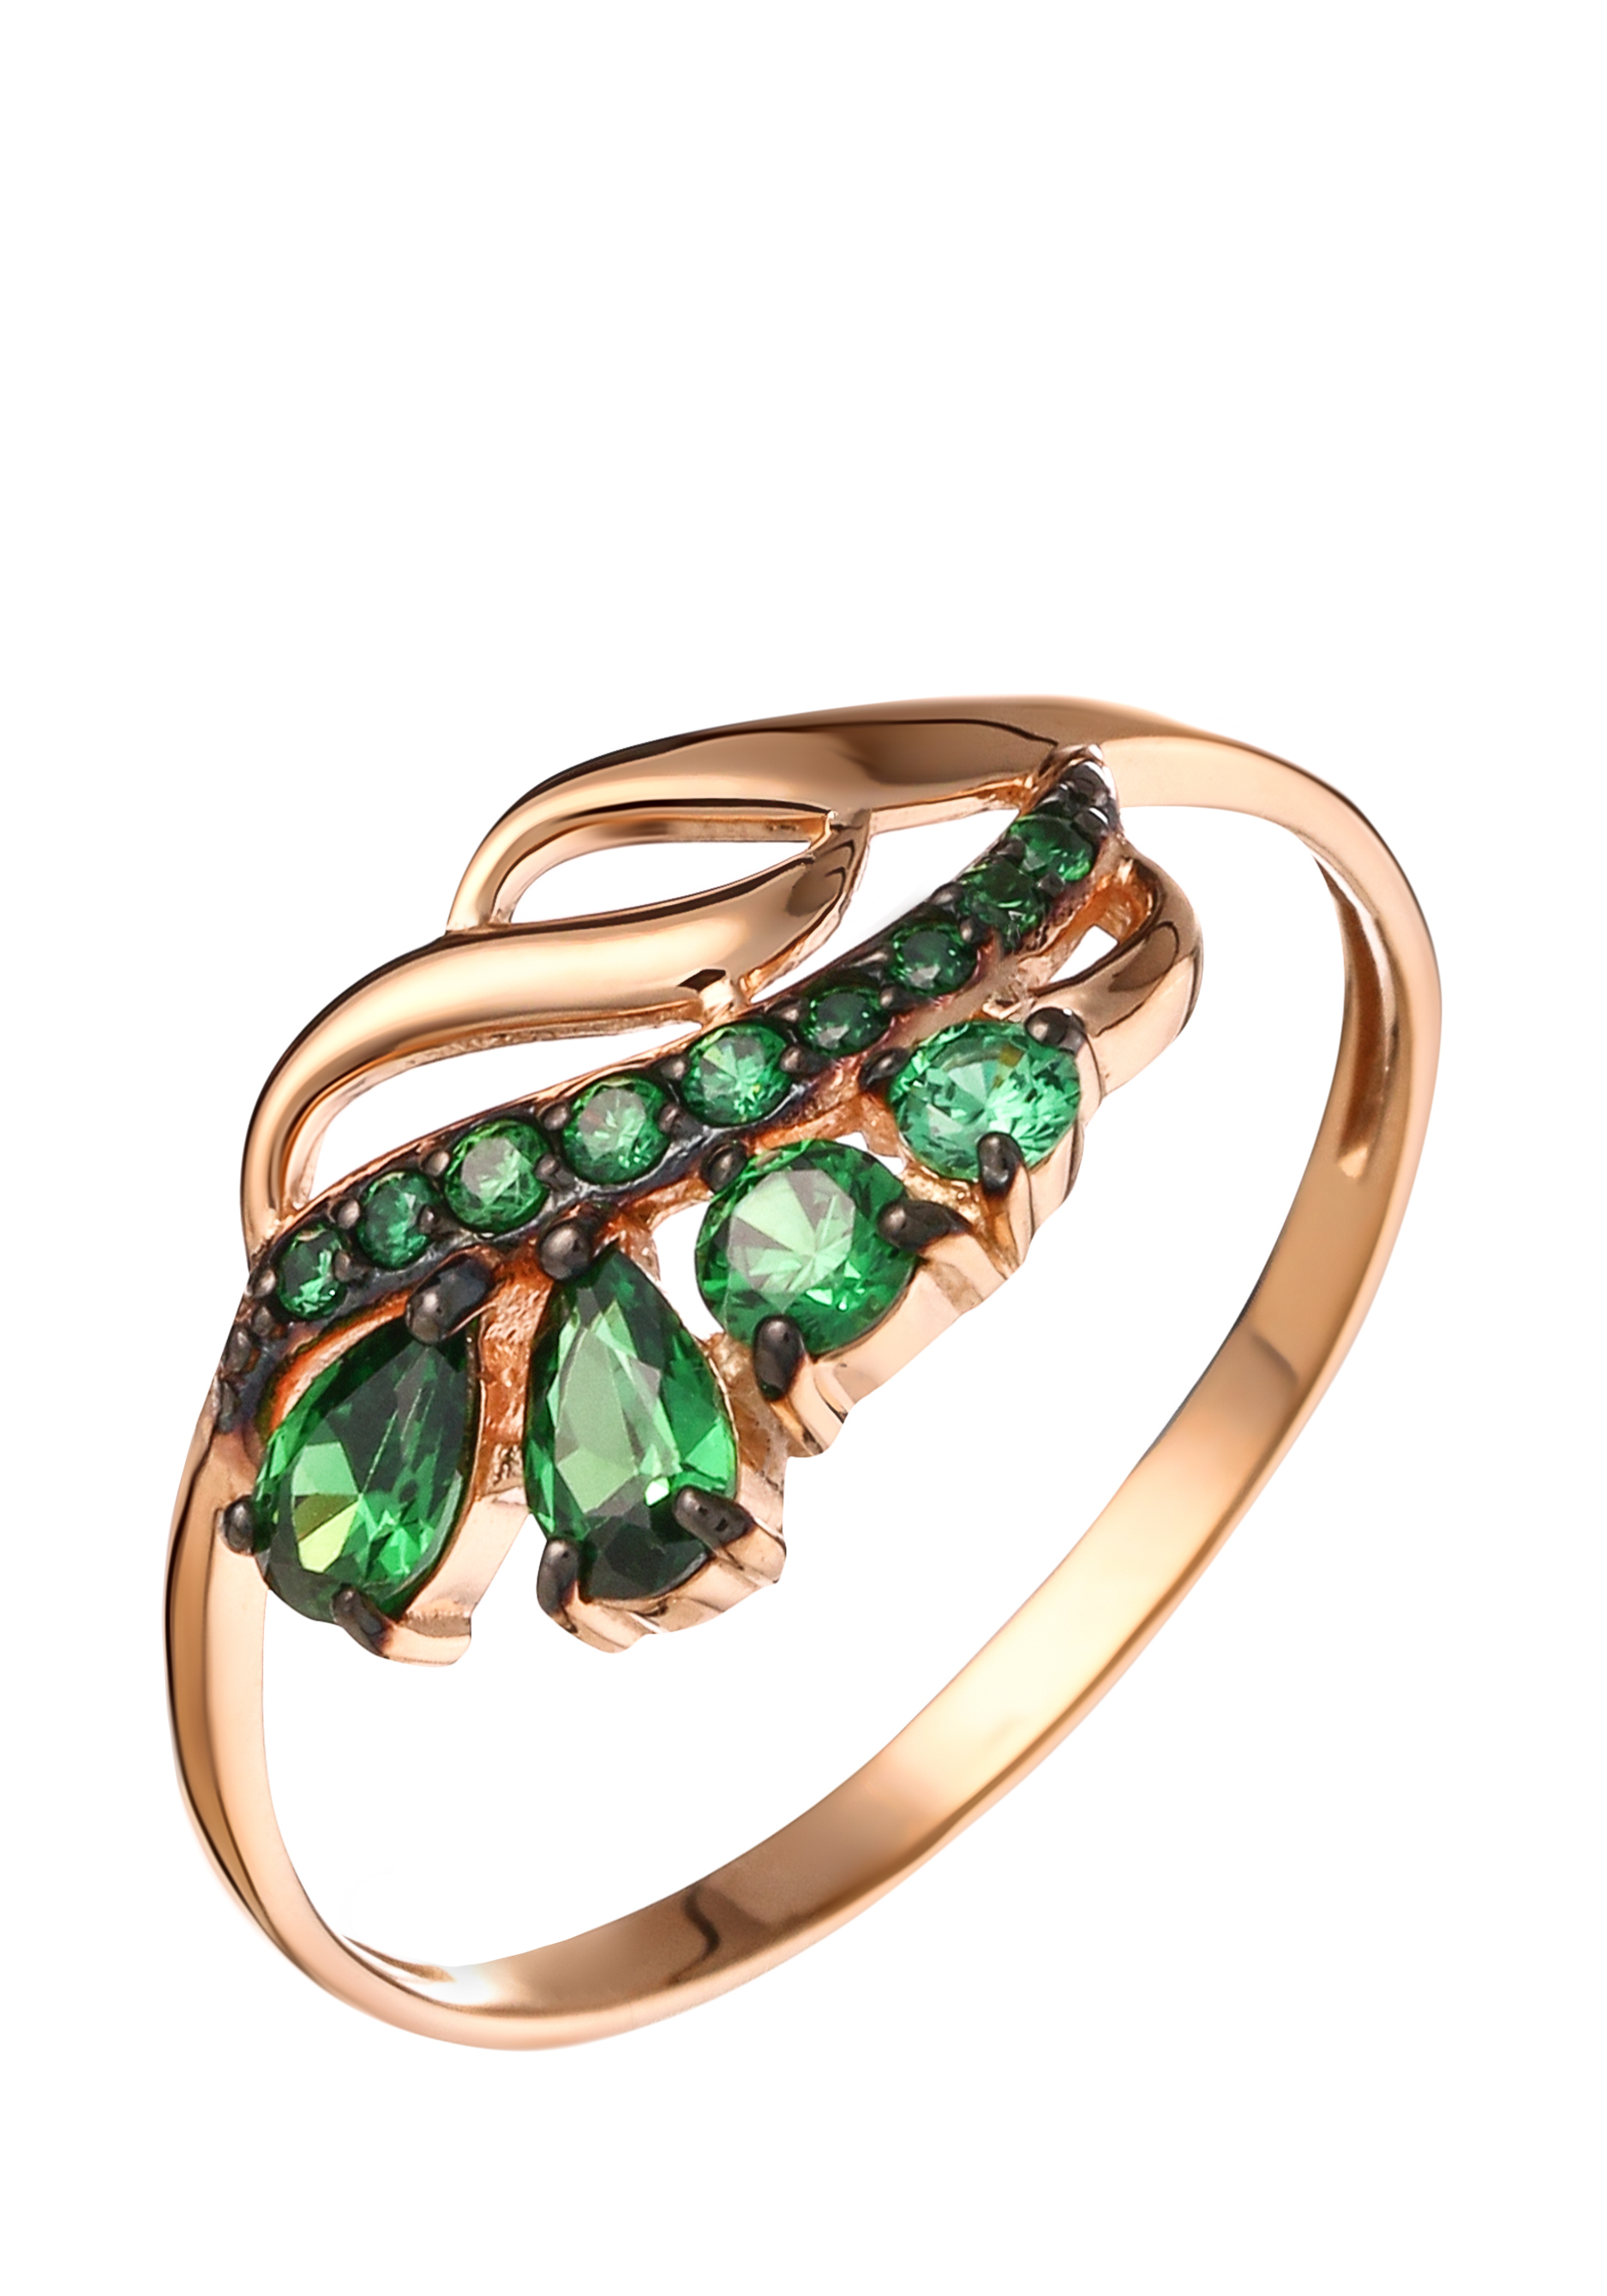 Кольцо серебряное "Волшебное перо" Nouvelle, цвет зеленый, размер 17 кластер - фото 1